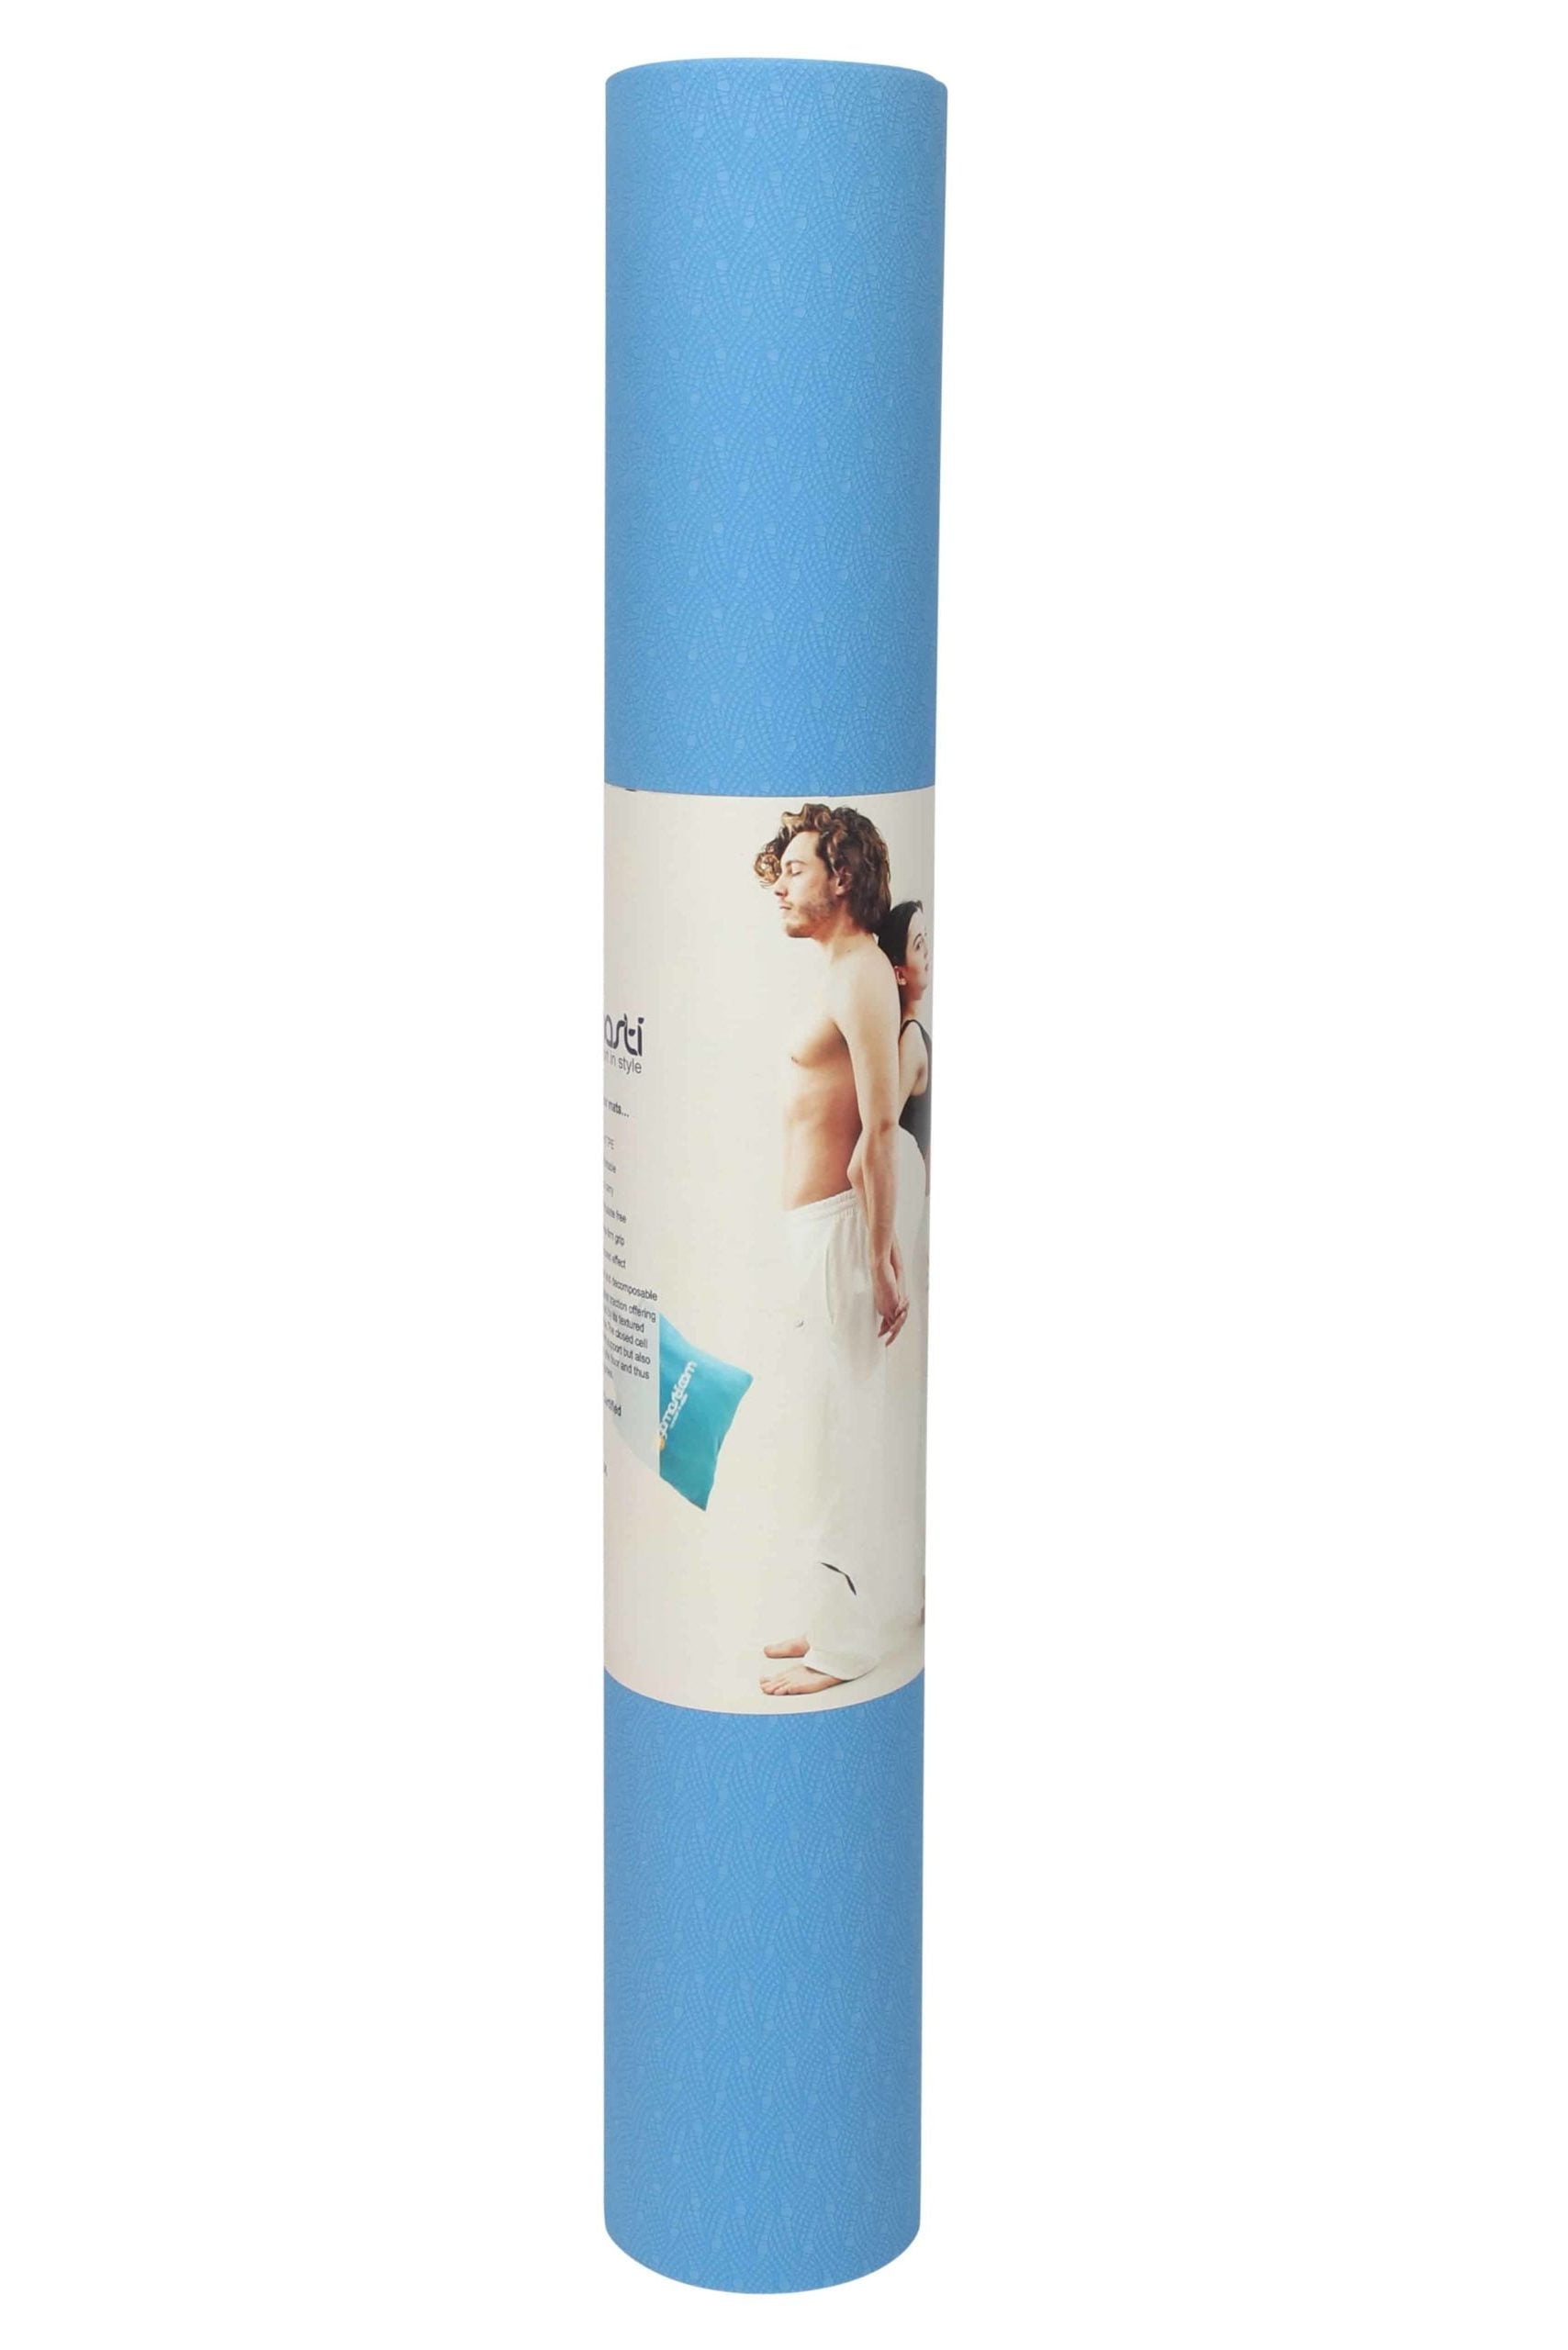 Yogamasti Sticky Yoga Mat - Travel Yoga Mat, Blue